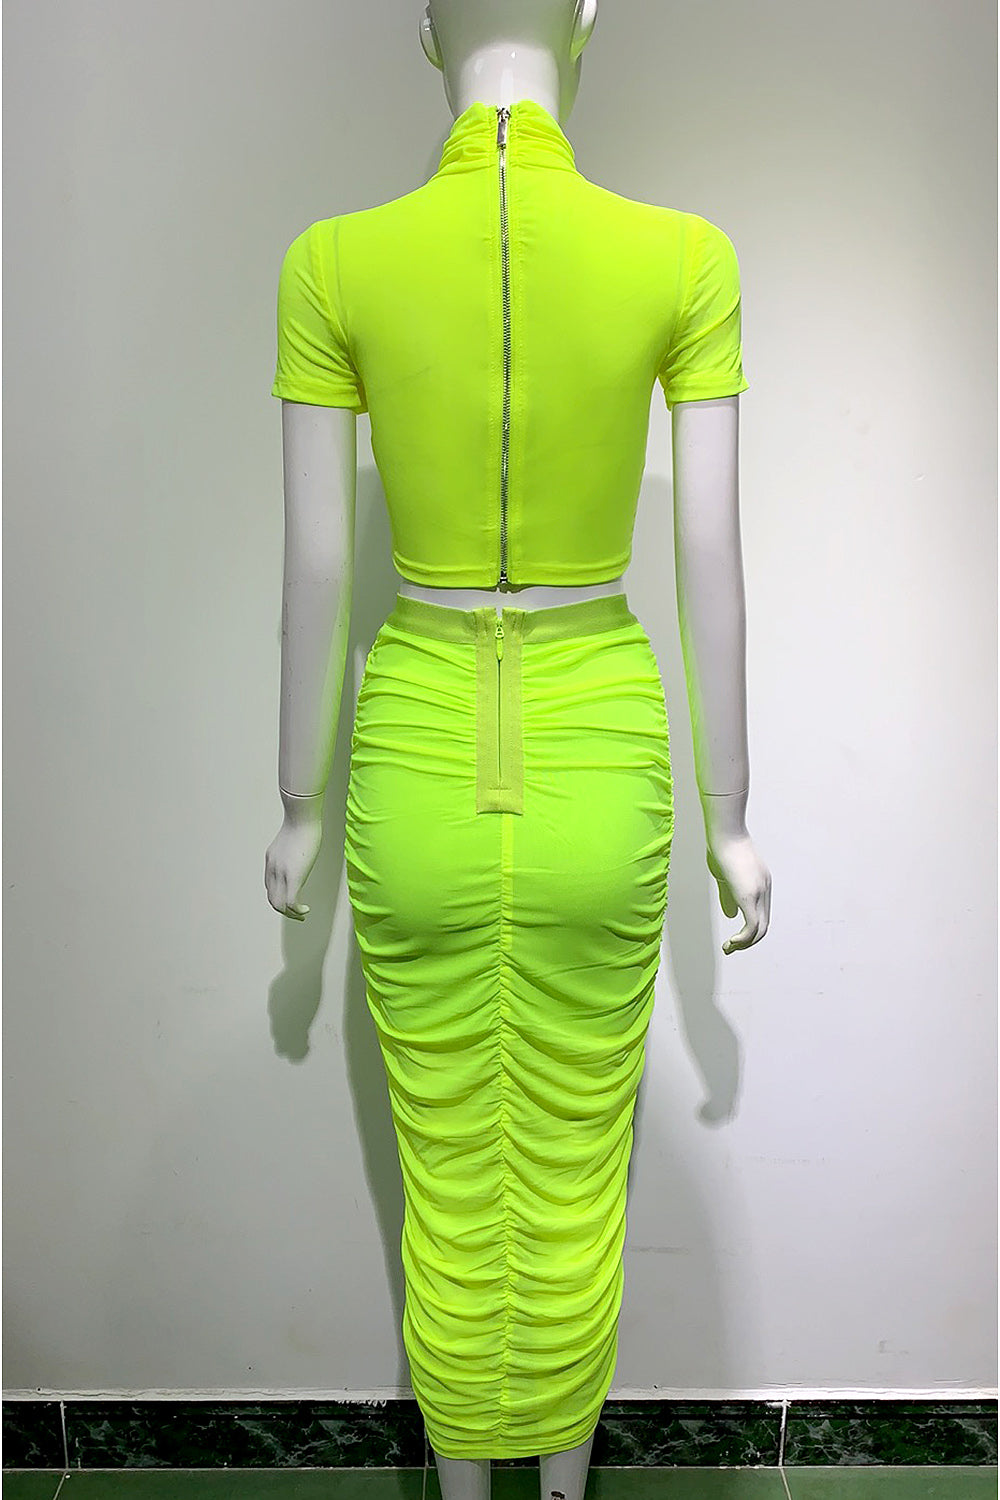 Falda ajustada de dos piezas verde fluorescente Falda plisada superior de manga corta con cuello alto